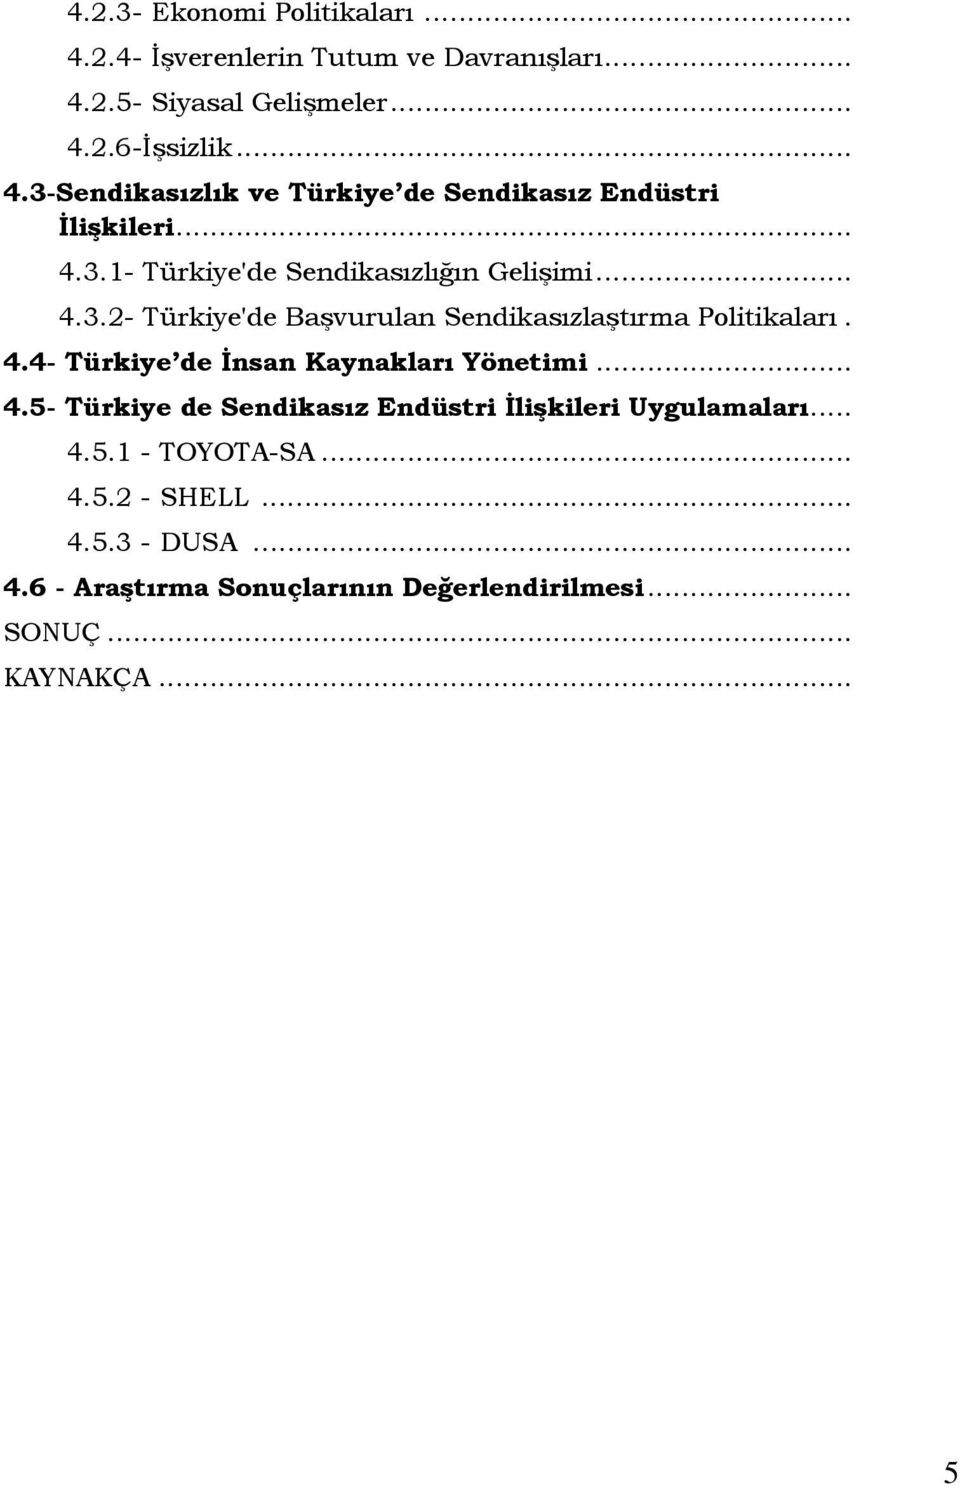 .. 4.5- Türkiye de Sendikasız Endüstri Đlişkileri Uygulamaları... 4.5.1 - TOYOTA-SA... 4.5.2 - SHELL... 4.5.3 - DUSA... 4.6 - Araştırma Sonuçlarının Değerlendirilmesi.